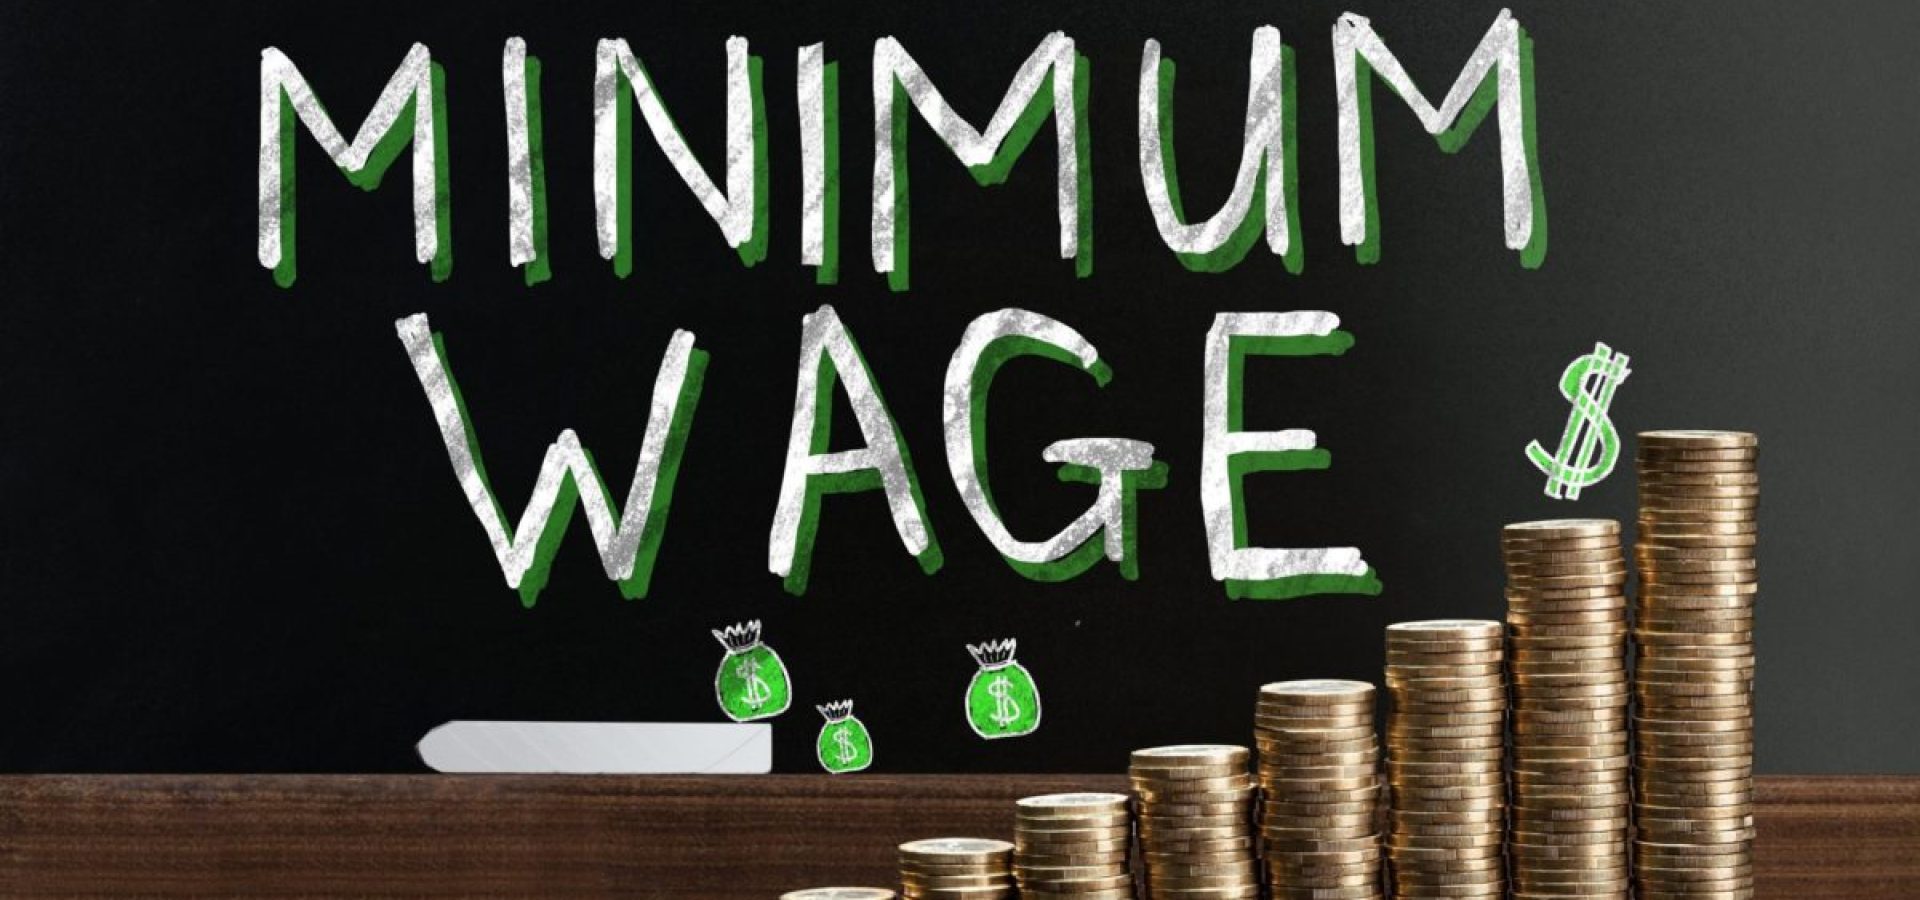 federal minimum wage